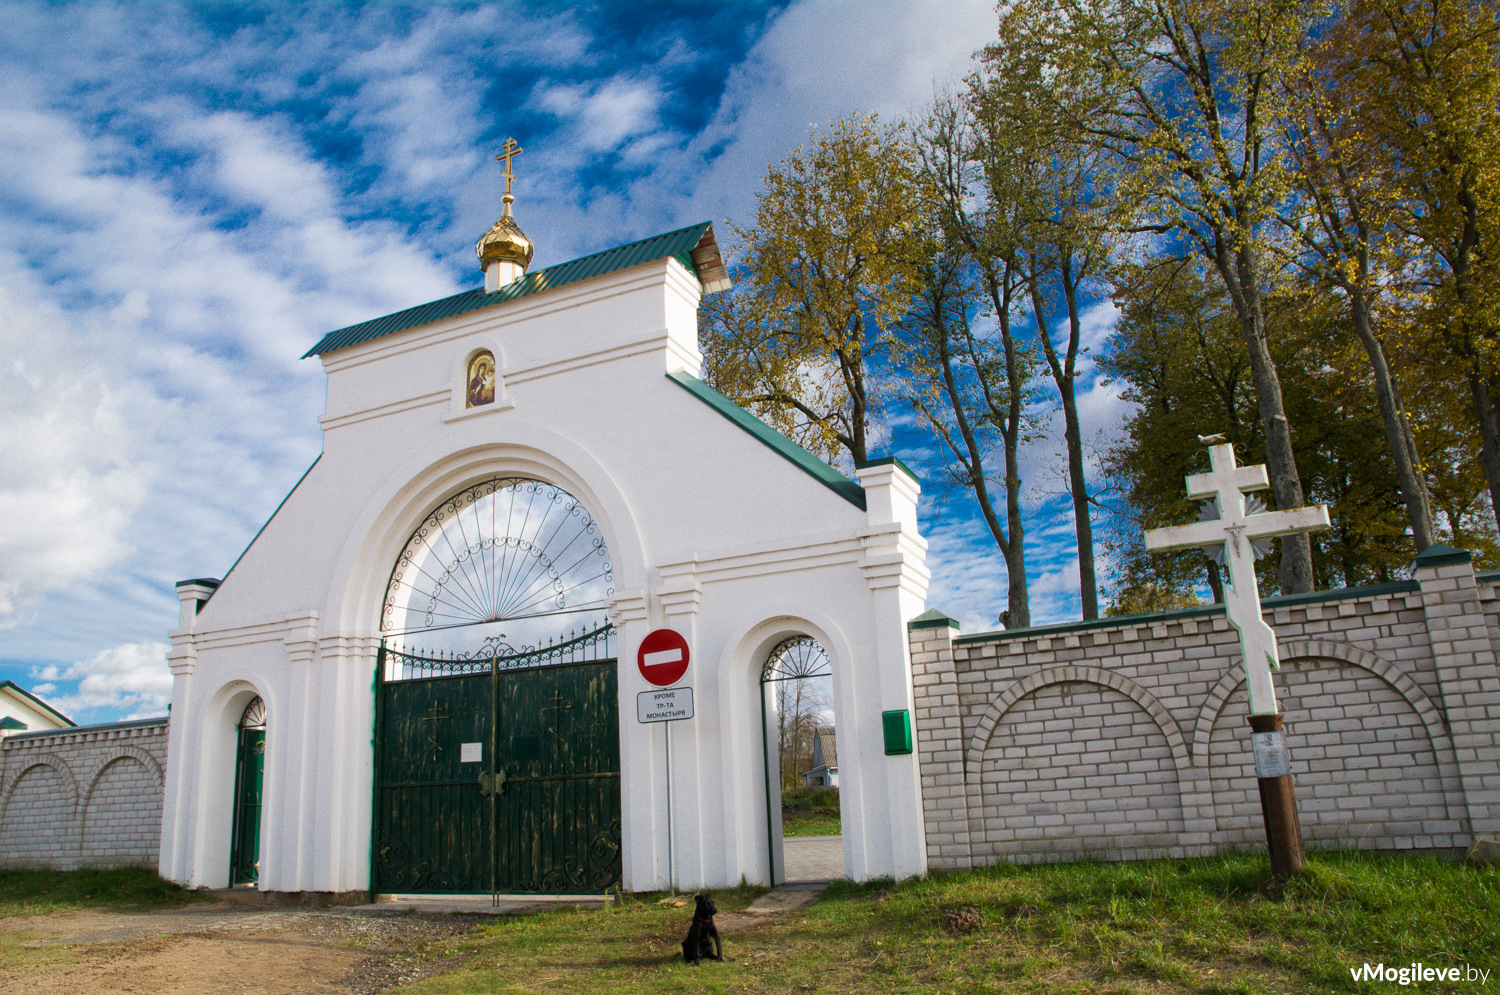 Вход на территорию Свято-Вознесенского монастыря